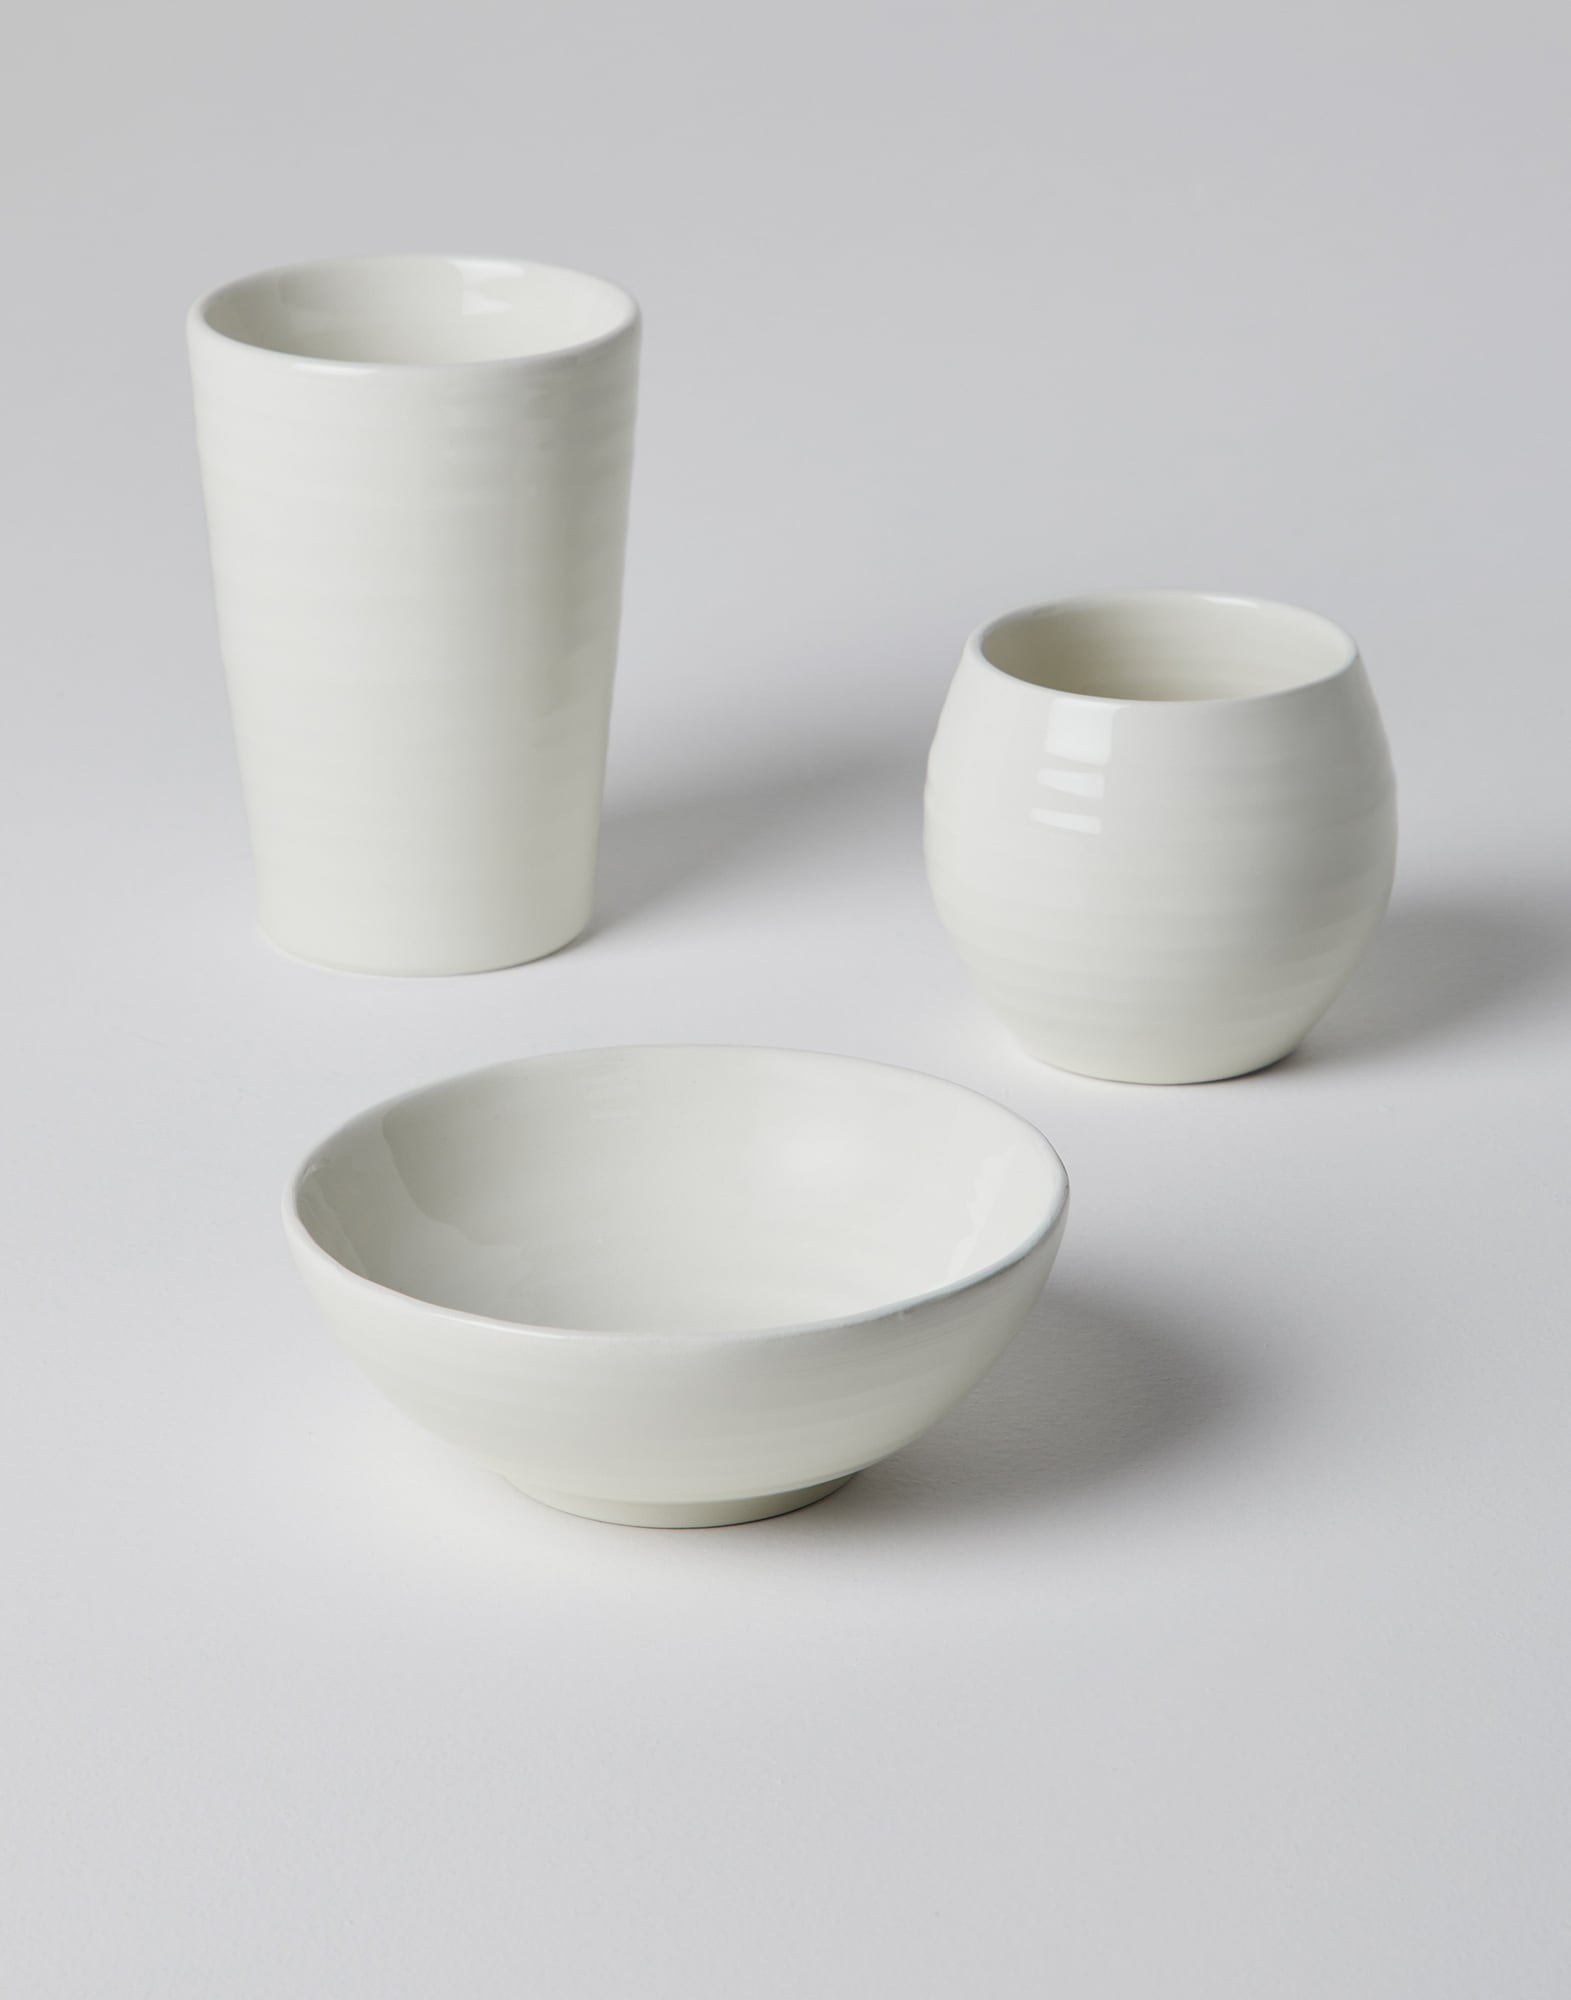 Tris set of ceramic bowls